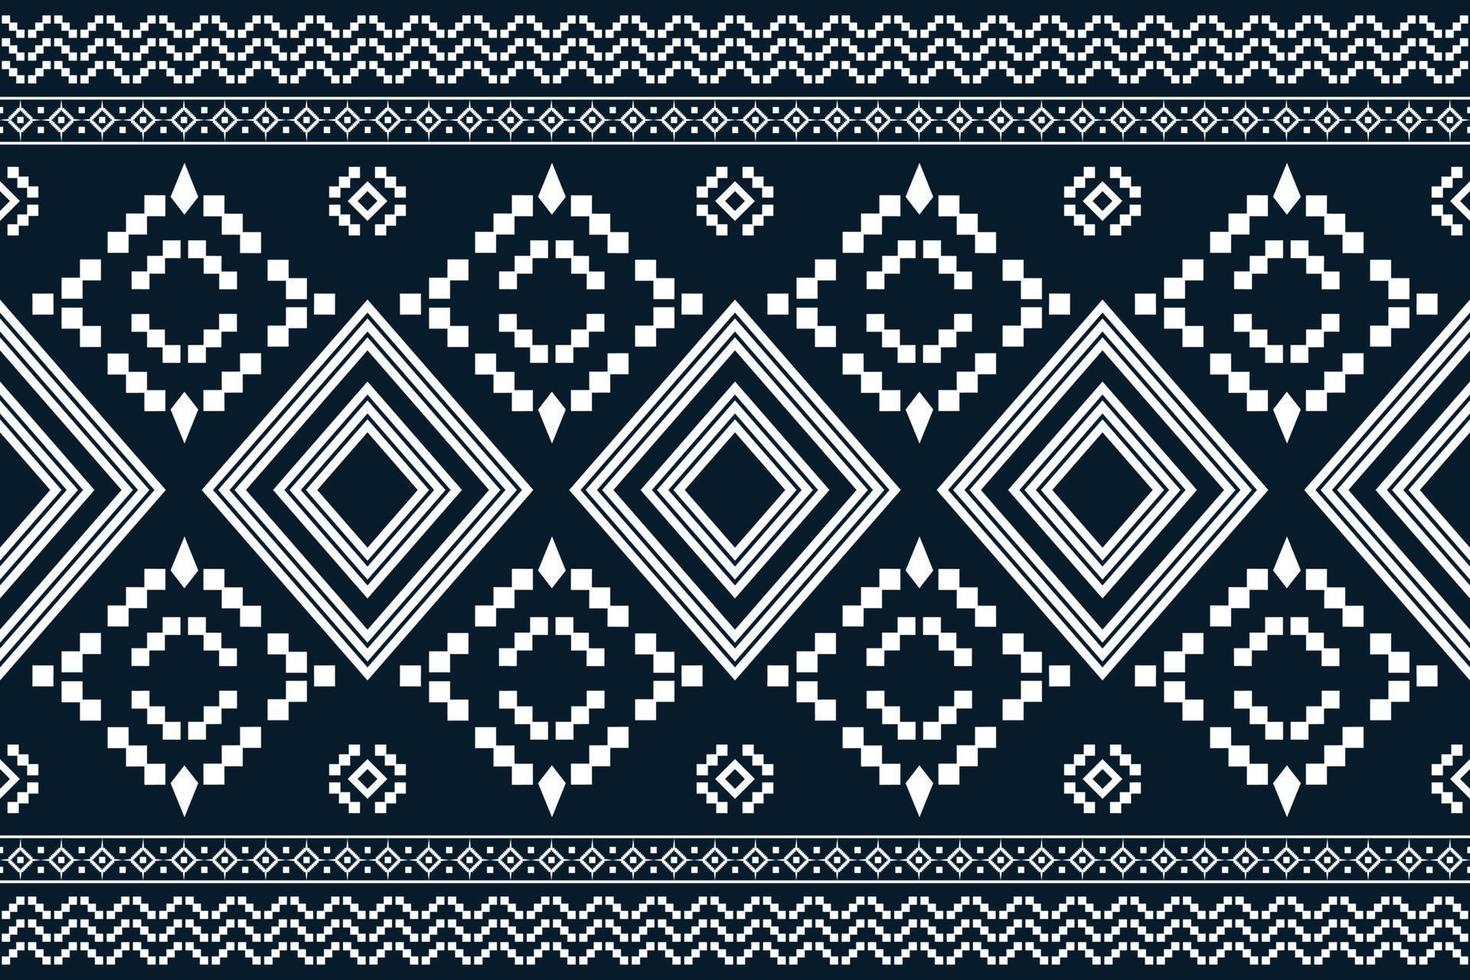 estilo geométrico padrão de tecido étnico. sarong asteca étnico padrão oriental fundo azul marinho escuro tradicional. resumo,vetor,ilustração. use para textura, roupas, embrulhos, decoração, carpete. vetor